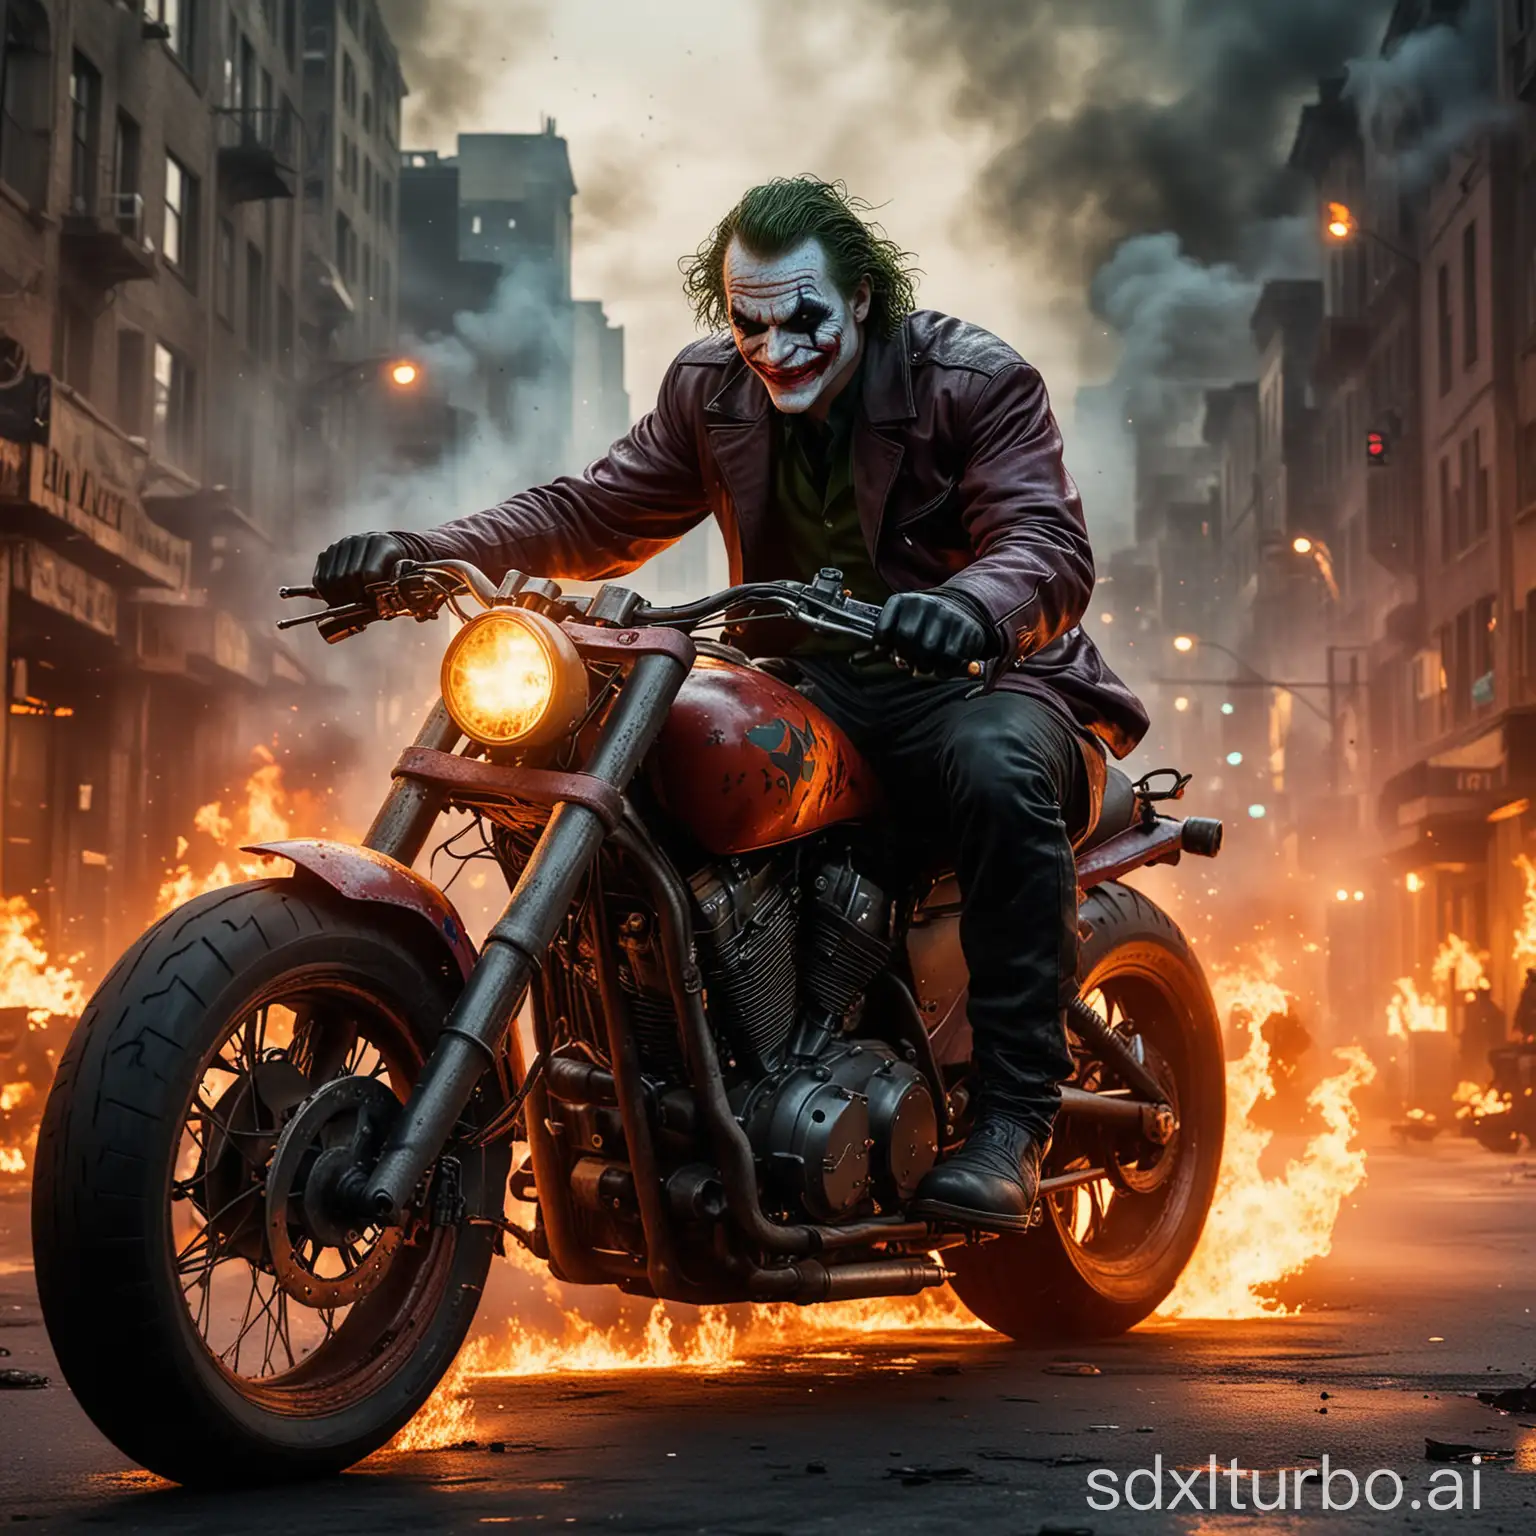 Motorräder gehen, auf dem Motorrad sitz Der Joker von Batman, das Motorrad ist Rot und er fährt durch einer brennenden Stadt